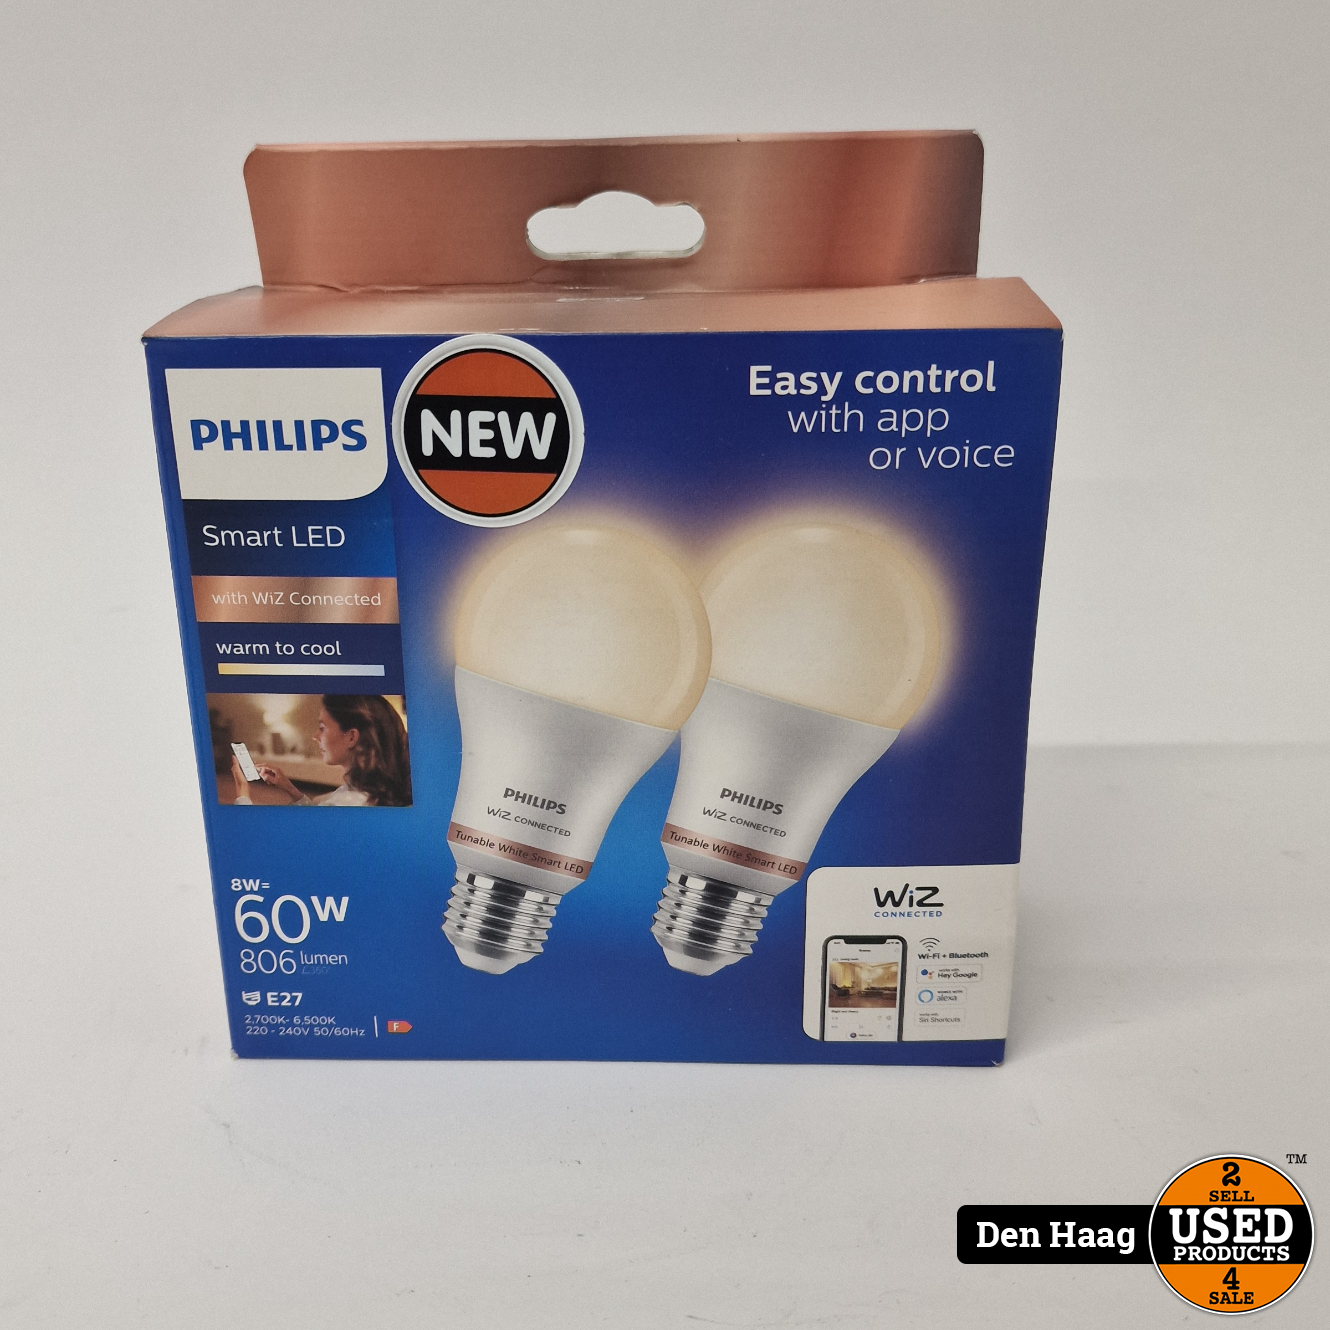 vertel het me Betuttelen Buitenshuis philips Philips Smart LED E27 8W 806lm 2700K-6500K Frosted | Nieuw. - Used  Products Den Haag